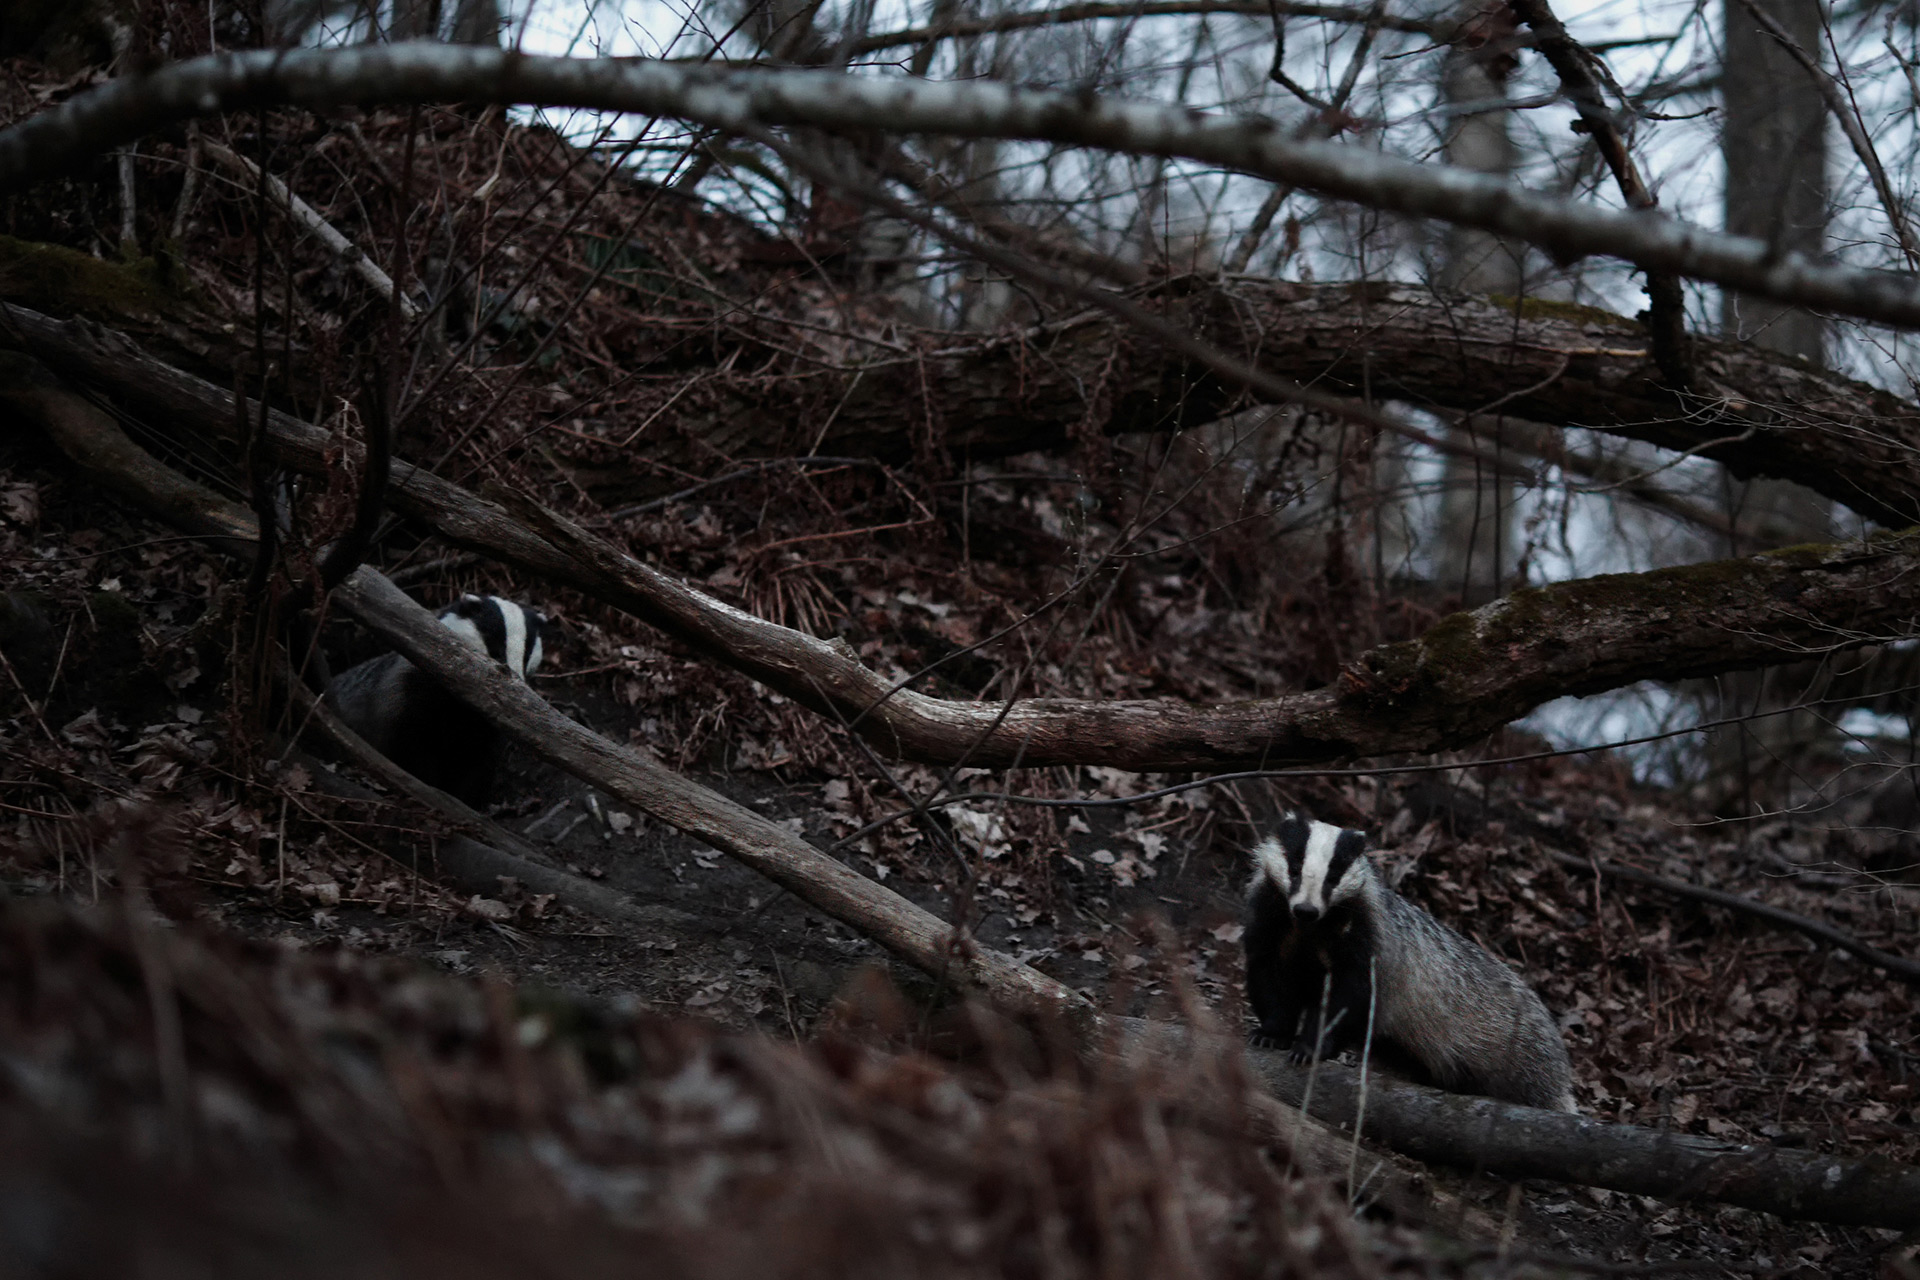 European badgers / Photo: A. Kuusela